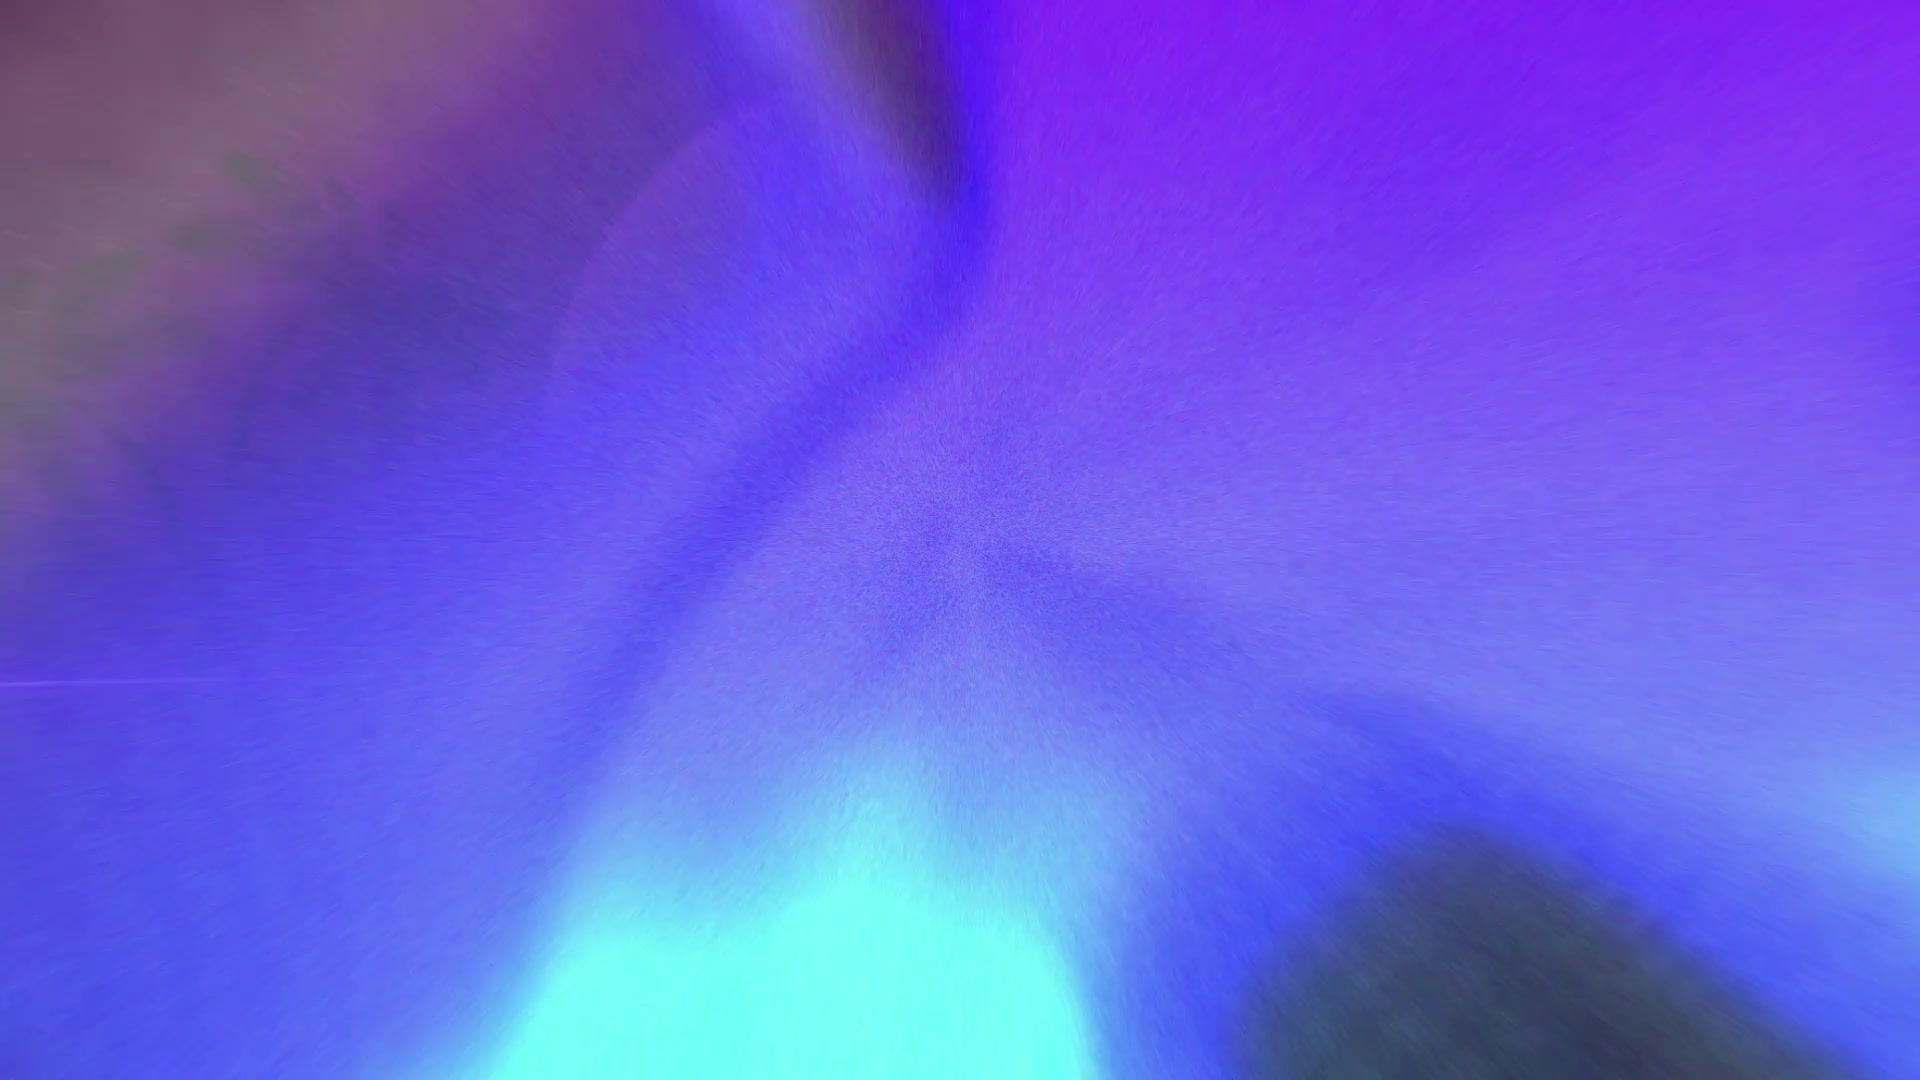 Retro Wave & Neon Backgrounds for Premiere Pro Videohive 34301920 Premiere Pro Image 12